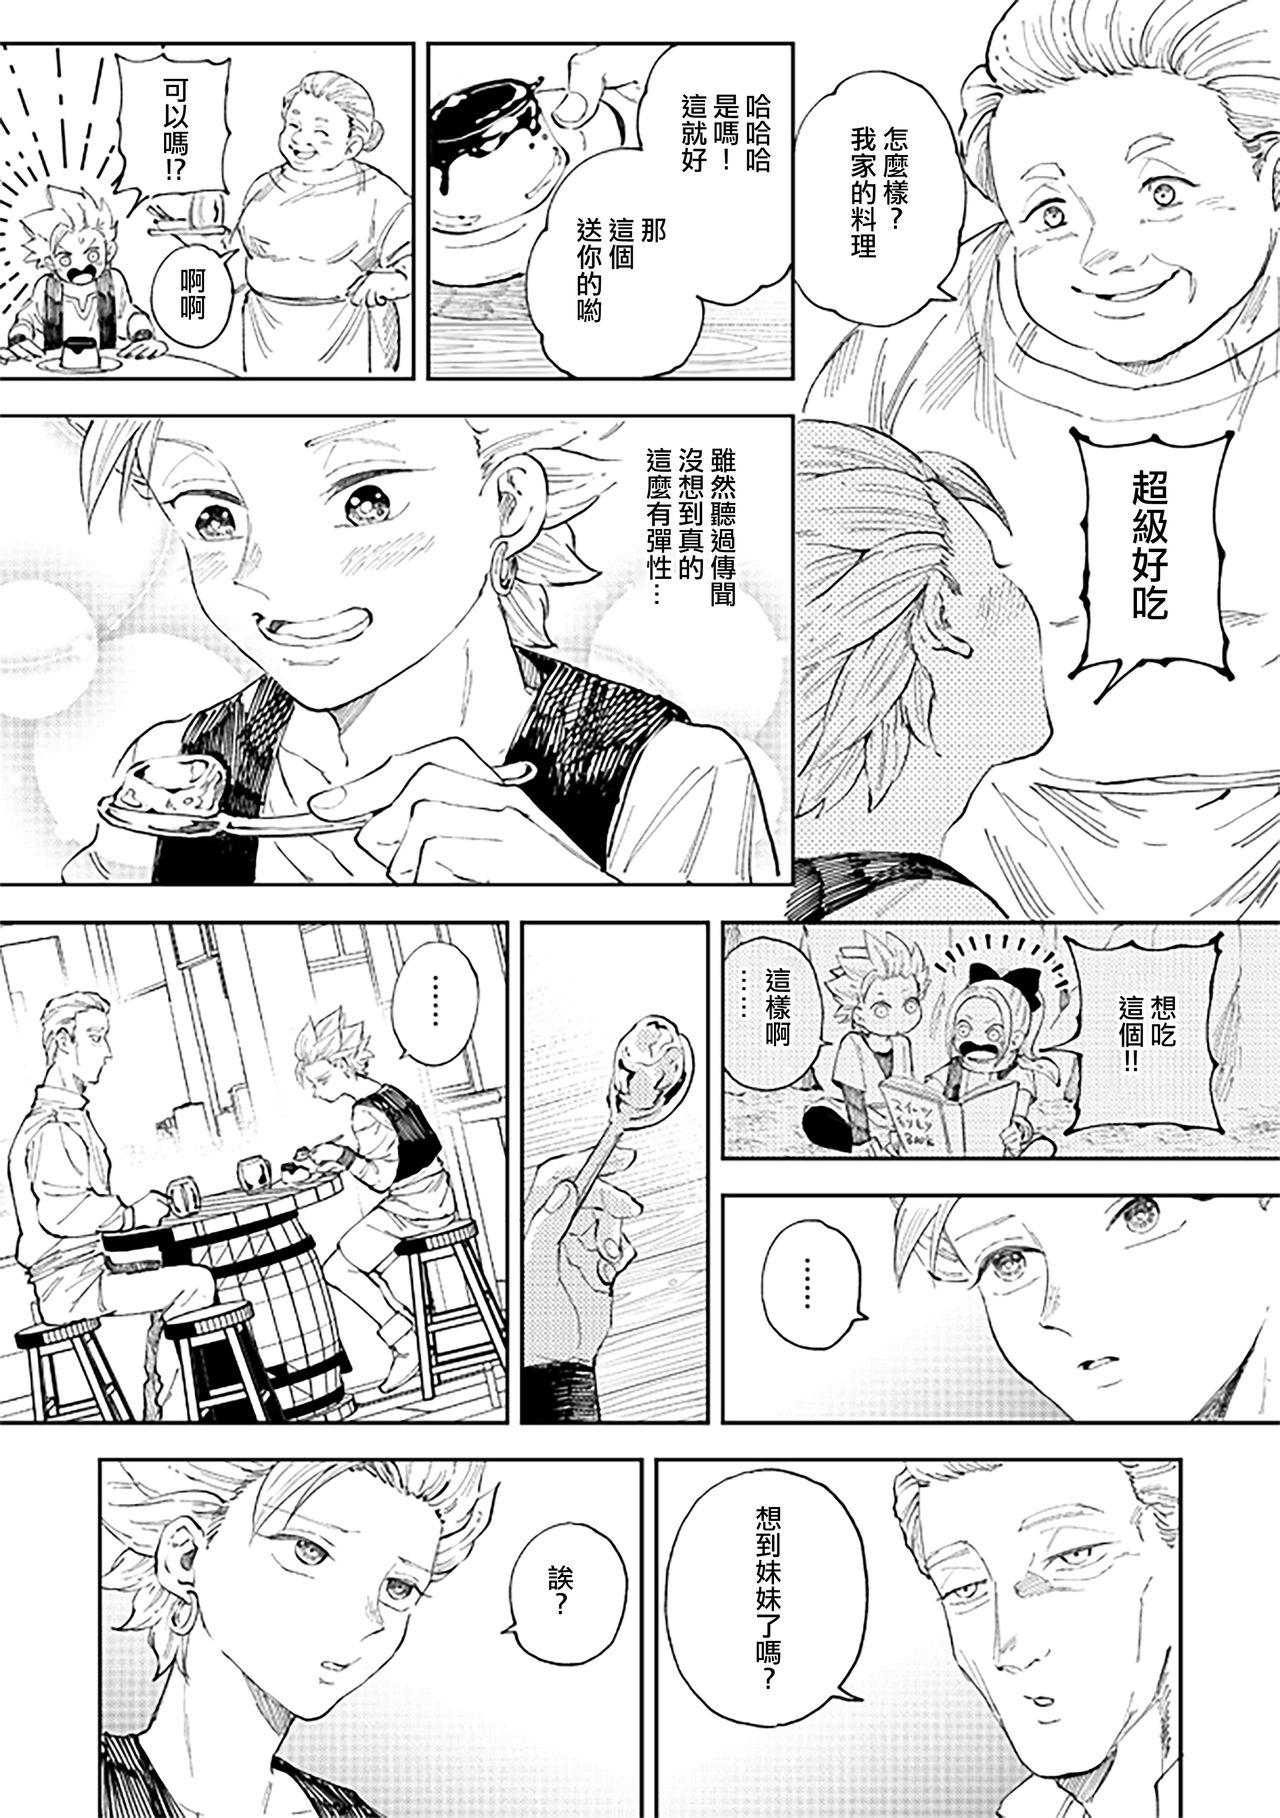 Blowing Rental Kamyu-kun 6 day - Dragon quest xi Suckingcock - Page 8